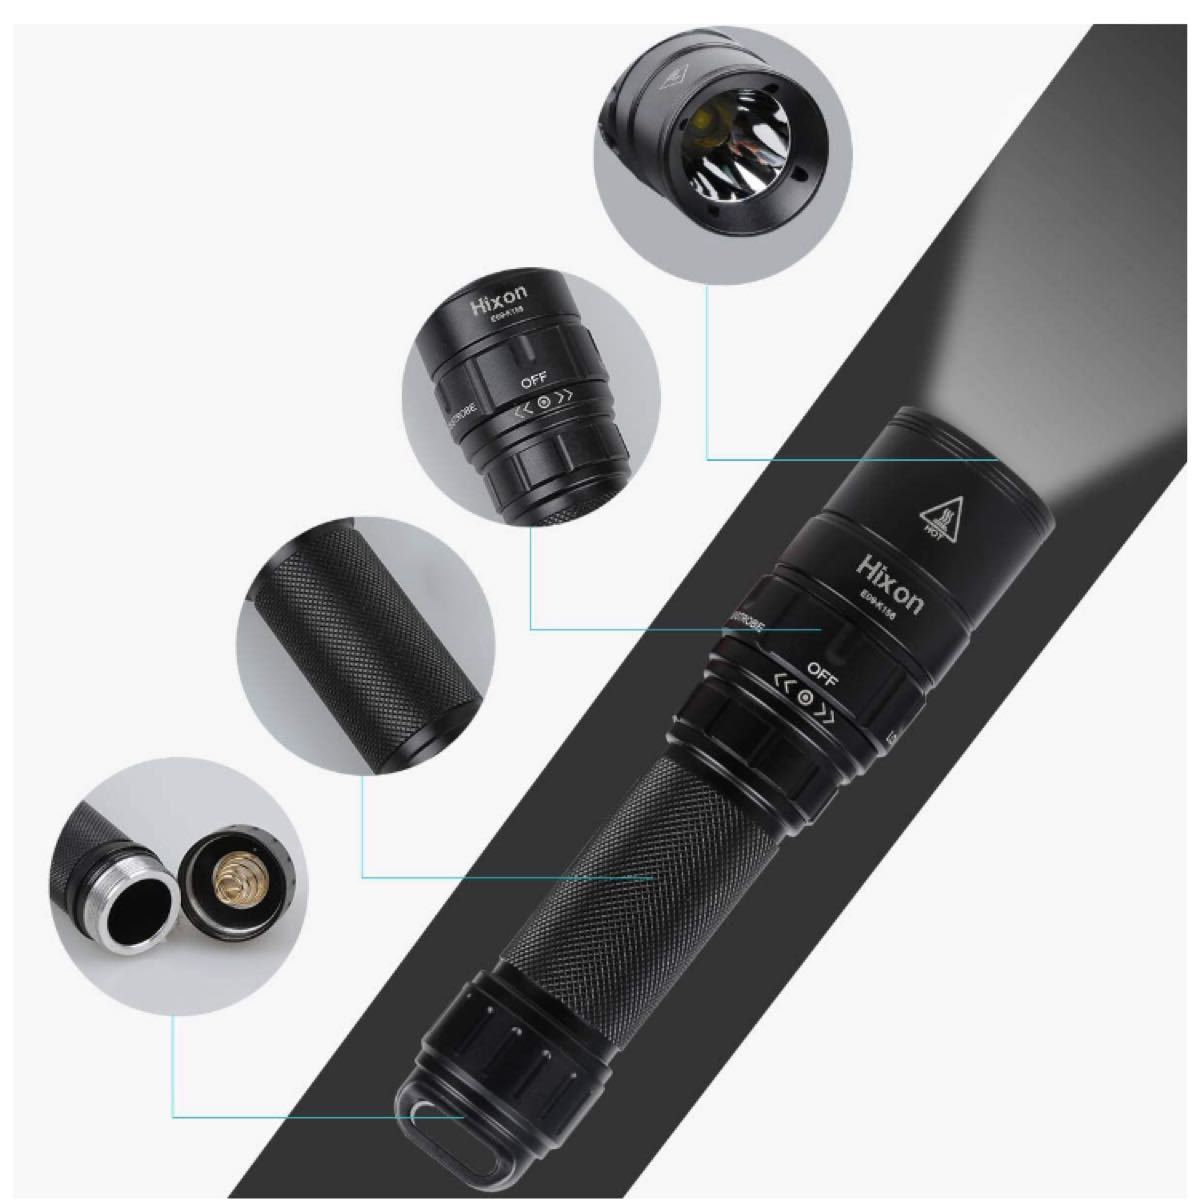 懐中電灯 USB充電式 超高輝度 小型 軽量 強力 ハンディライト IPX7 防水 7モード調光可能 SOS 点滅 停電 防災 